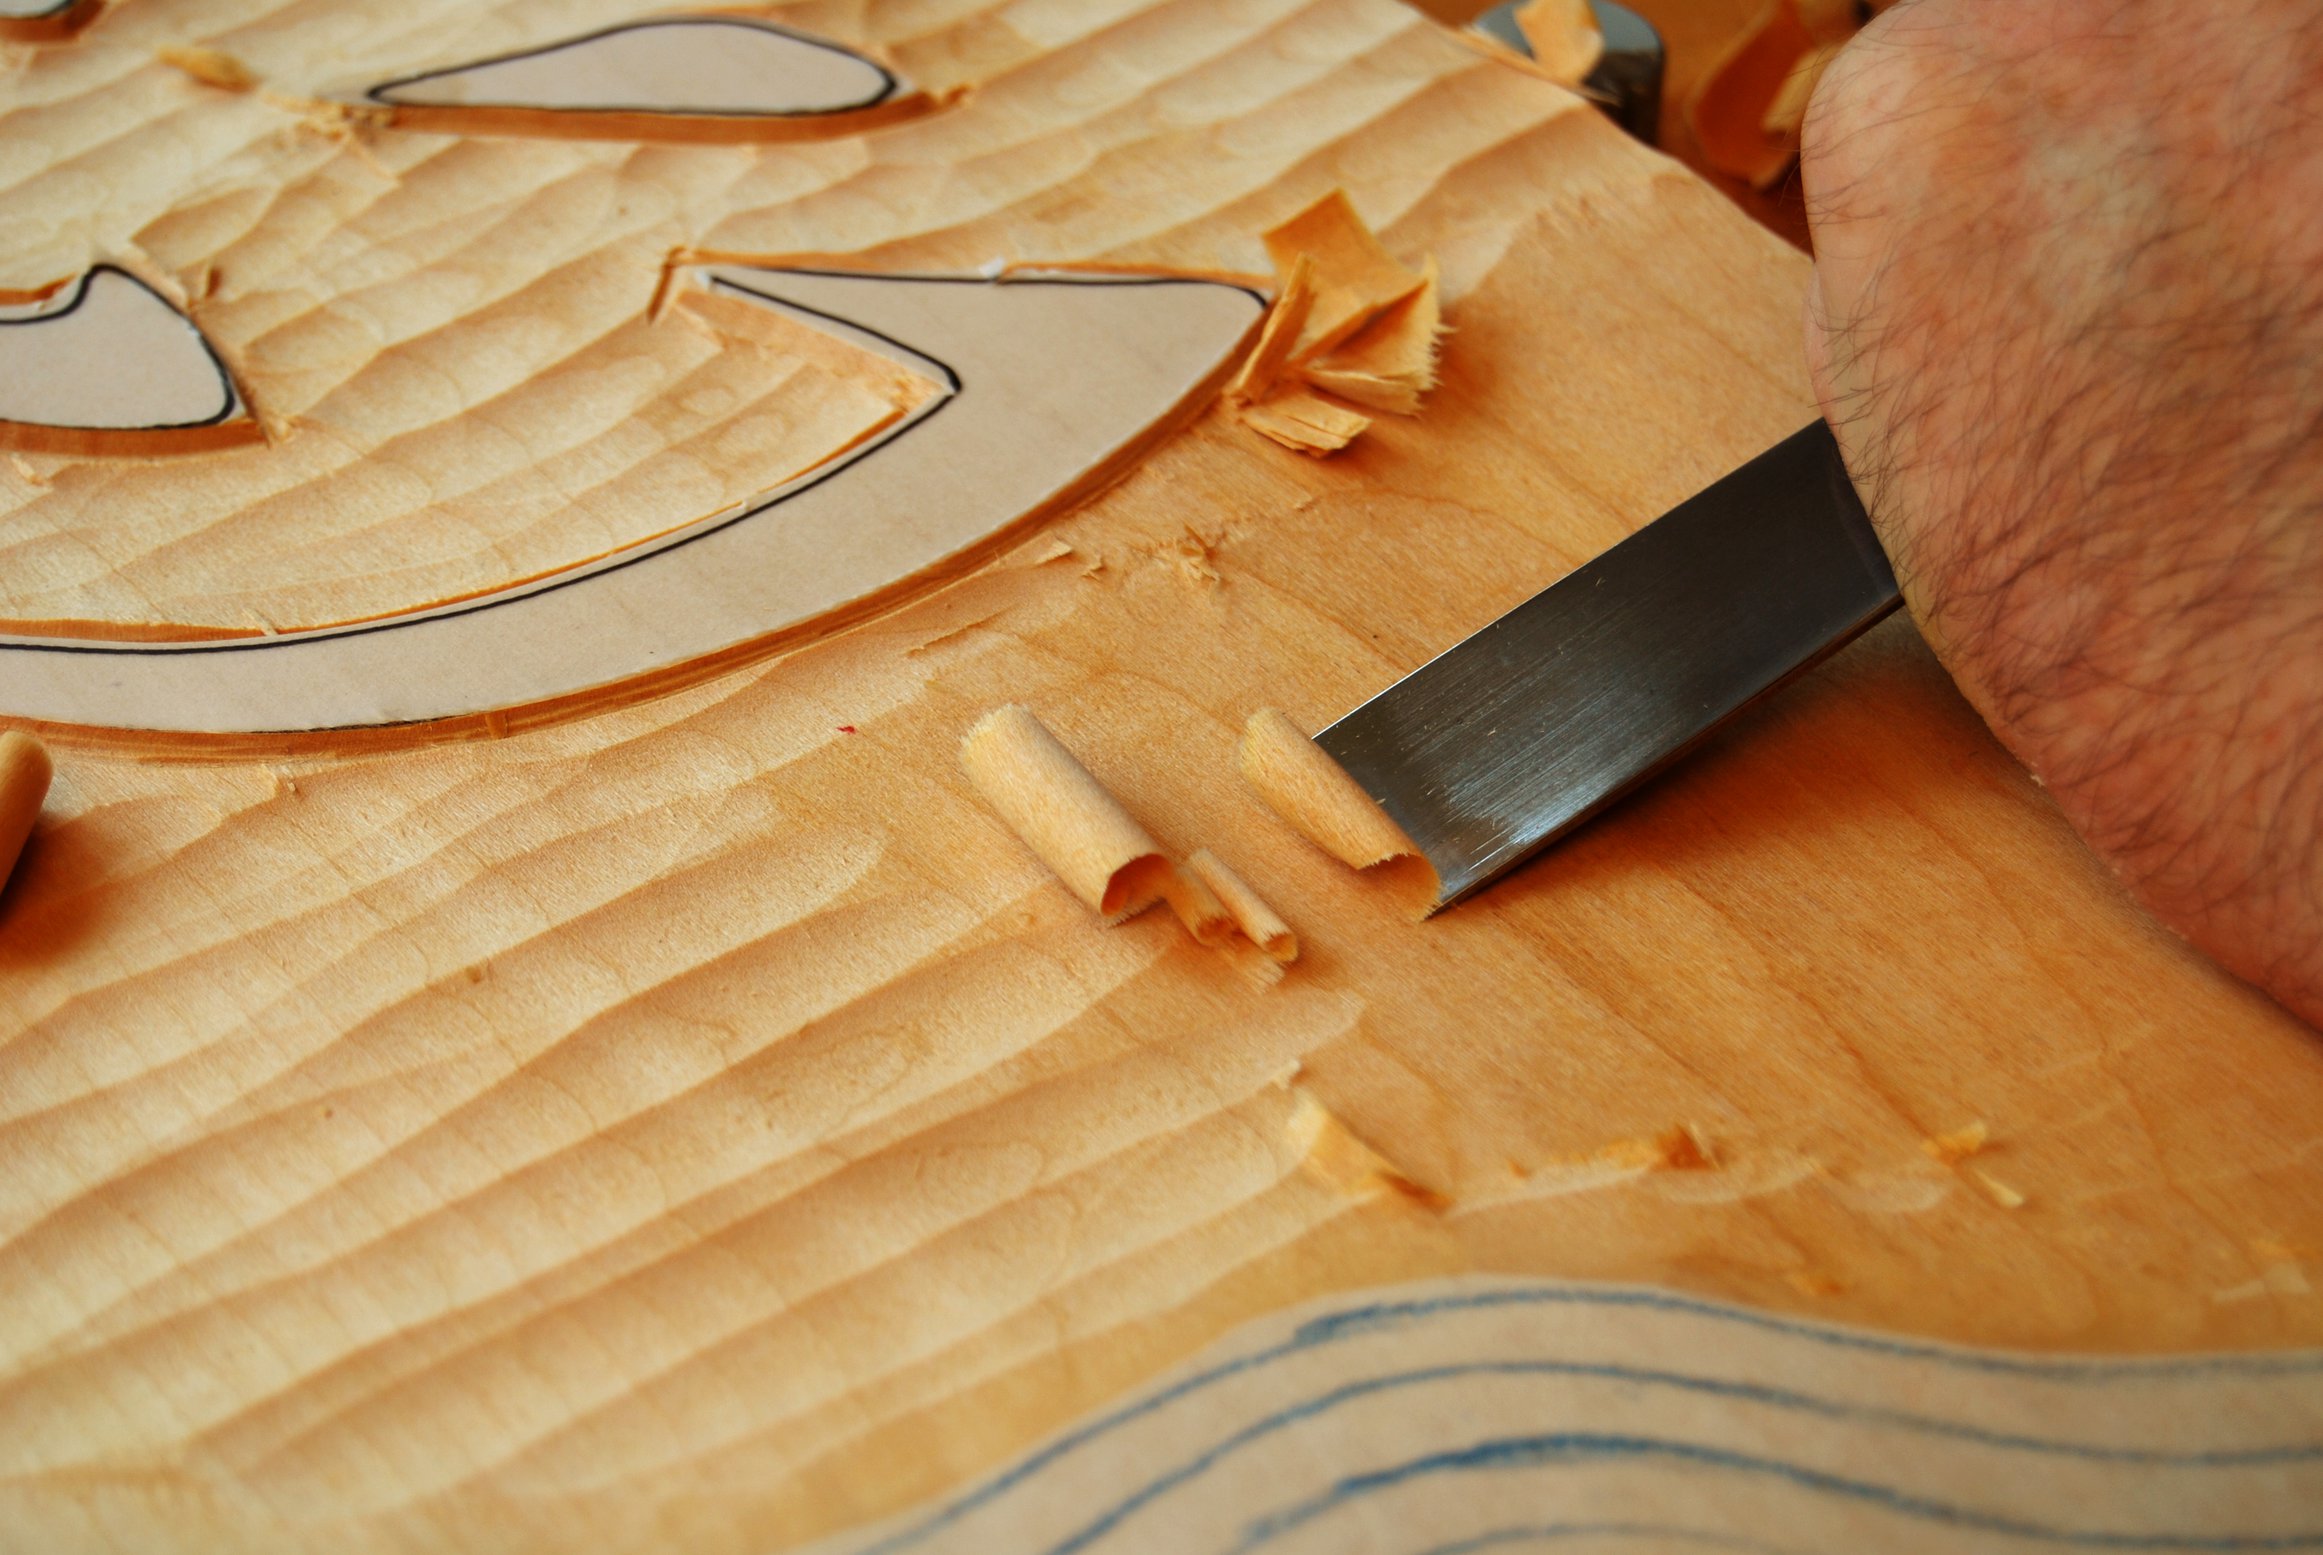 Sử dụng thớ gỗ để nâng cao khả năng chạm khắc của bạn